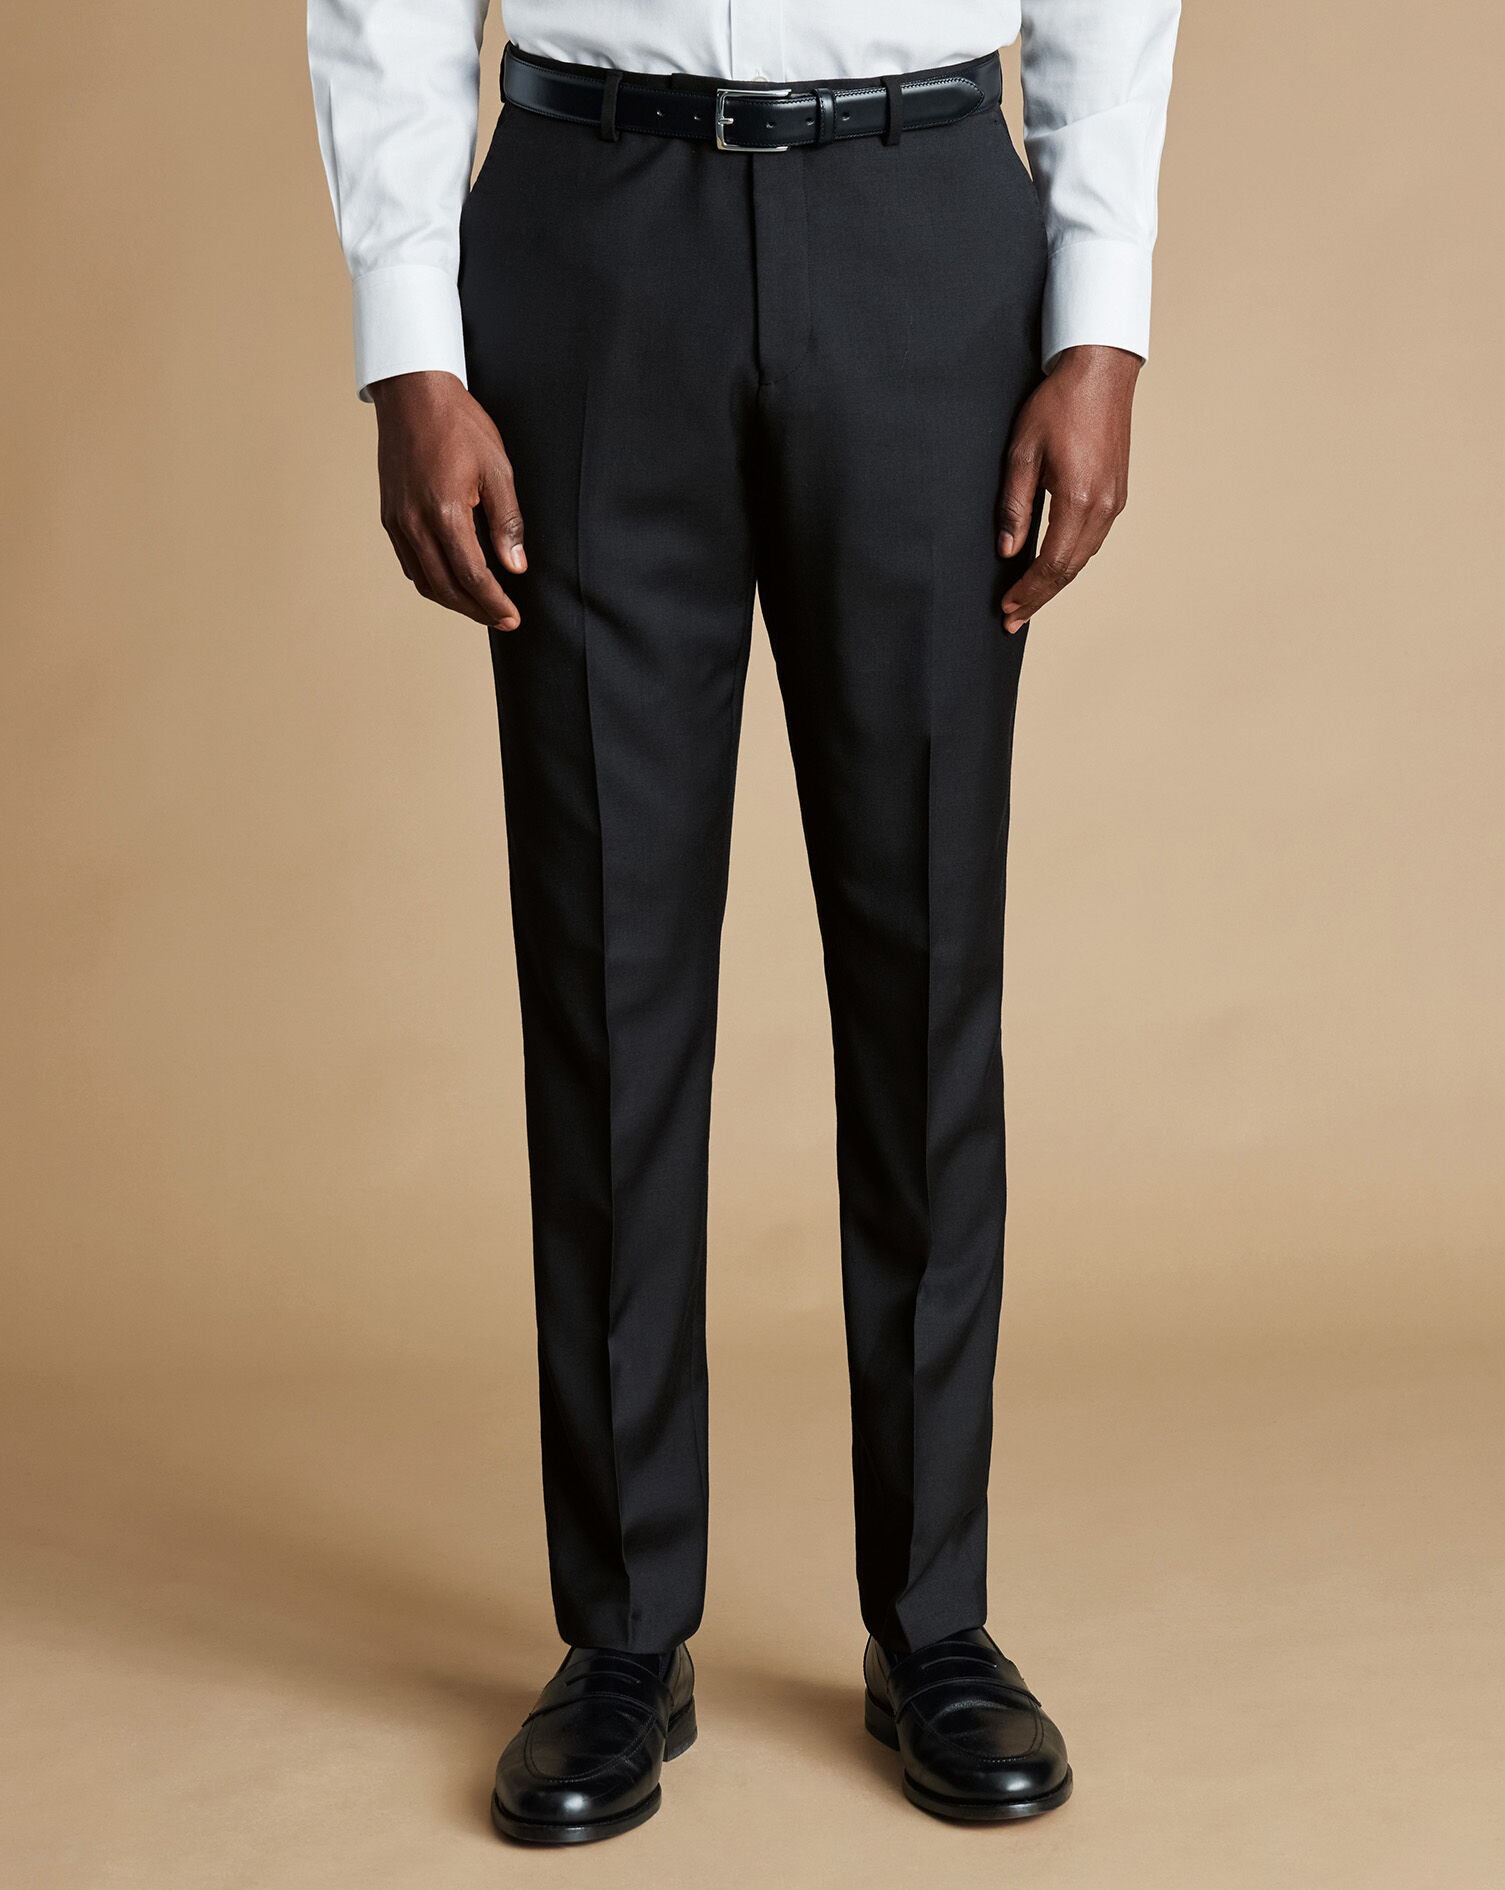 Haggar H26 Men's Premium Stretch Slim Fit Dress Pants - Black 34x30 : Target